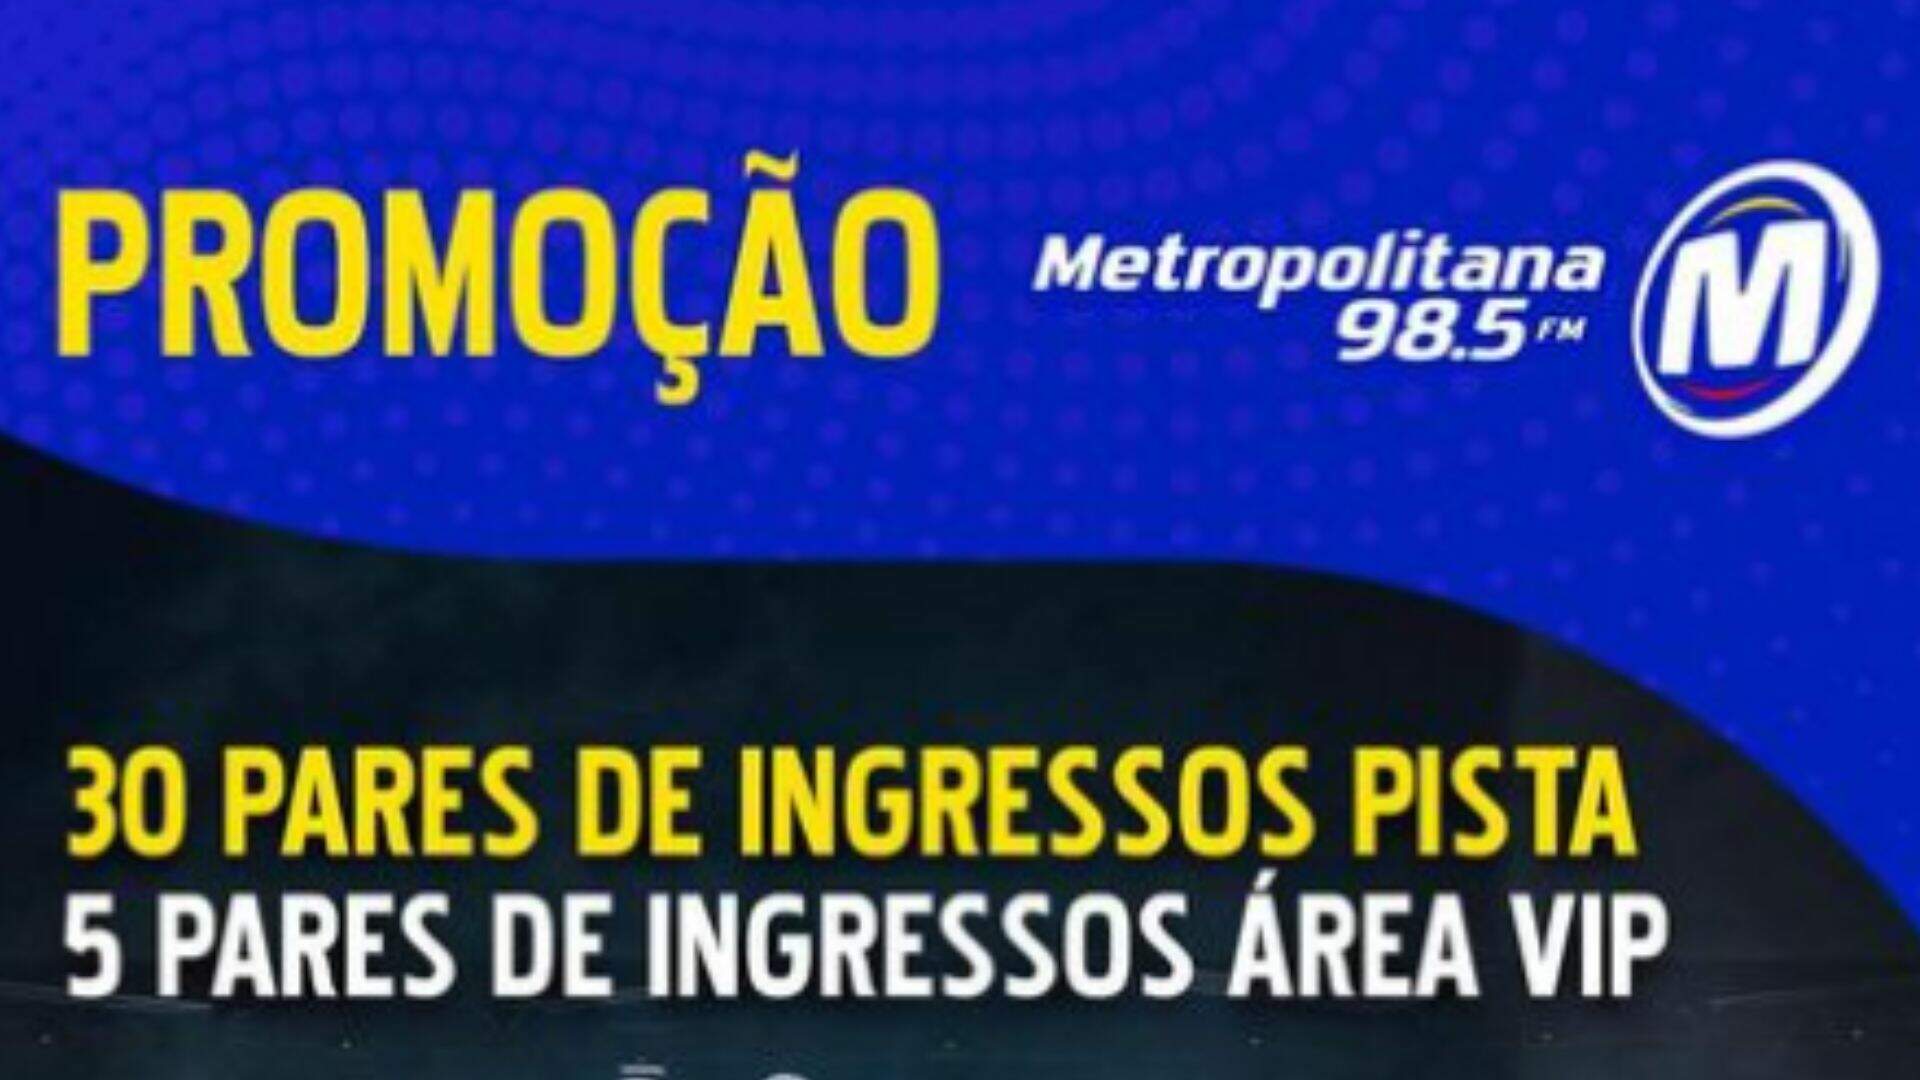 [ENCERRADA] Promoção: INGRESSOS HOLO DO ERIC PRYDZ NA METROPOLITANA - Metropolitana FM